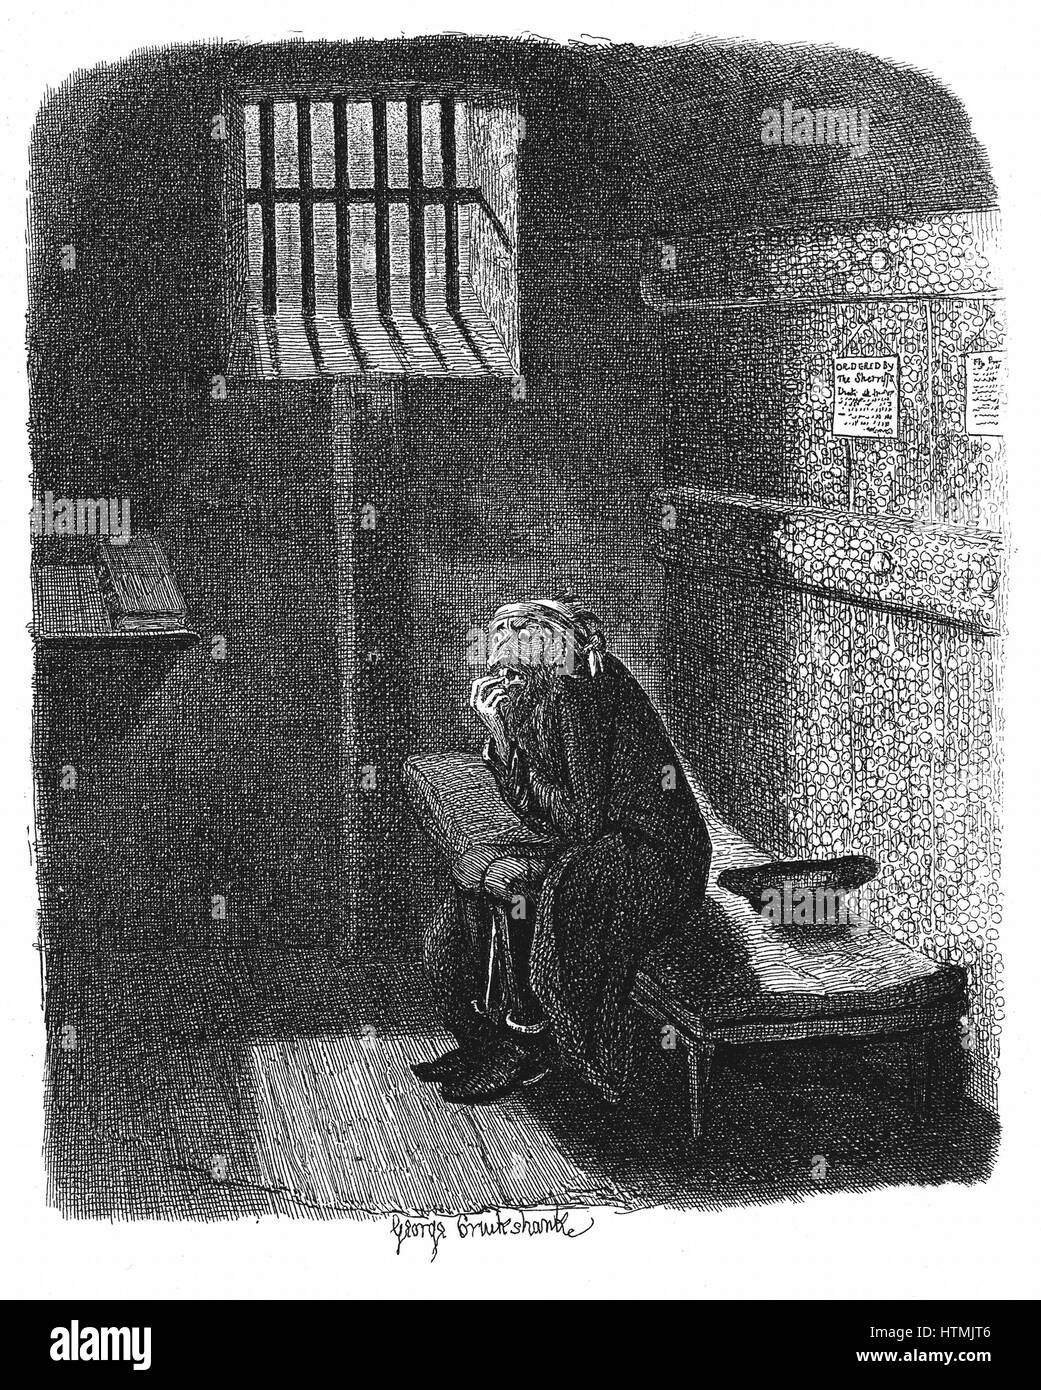 Fagin nella cella condannato in Newgate carcere in attesa della sua esecuzione. George Cruikshank illustrazione per Charles Dickens 'Oiliver Twist", Londra, 1837-38. Incisione Foto Stock